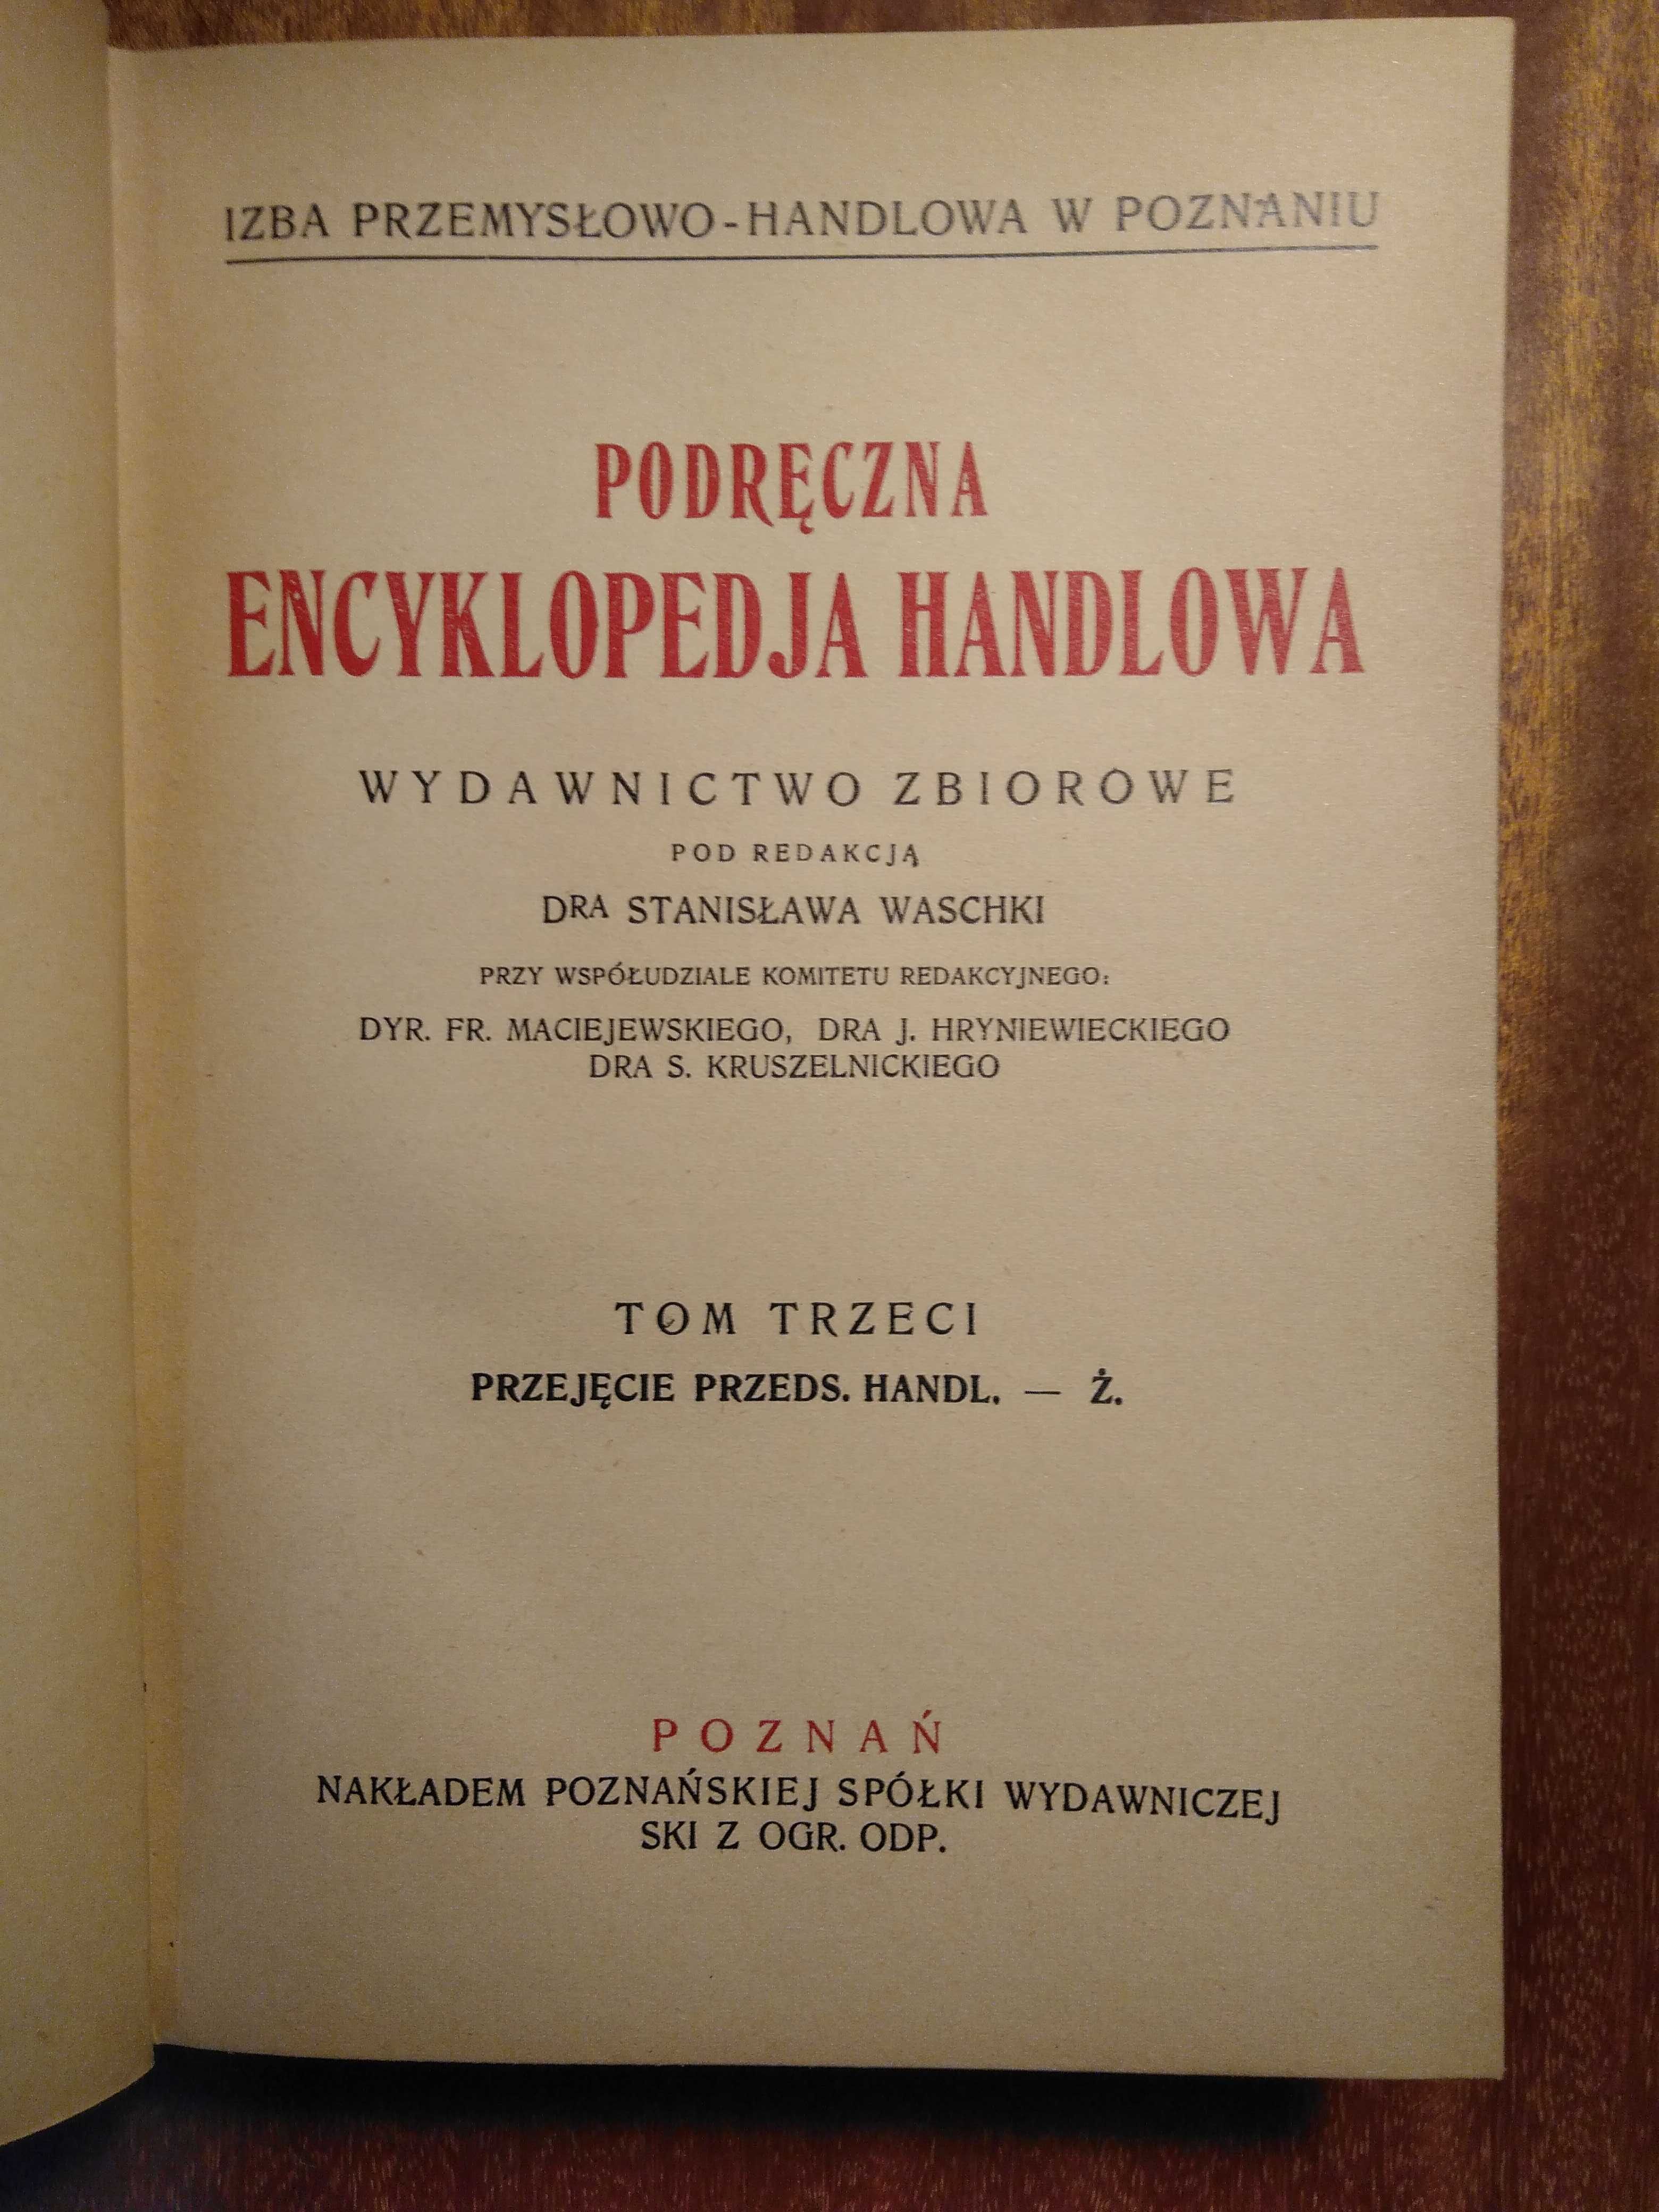 Podręczna Encyklopedja Handlowa - 1931